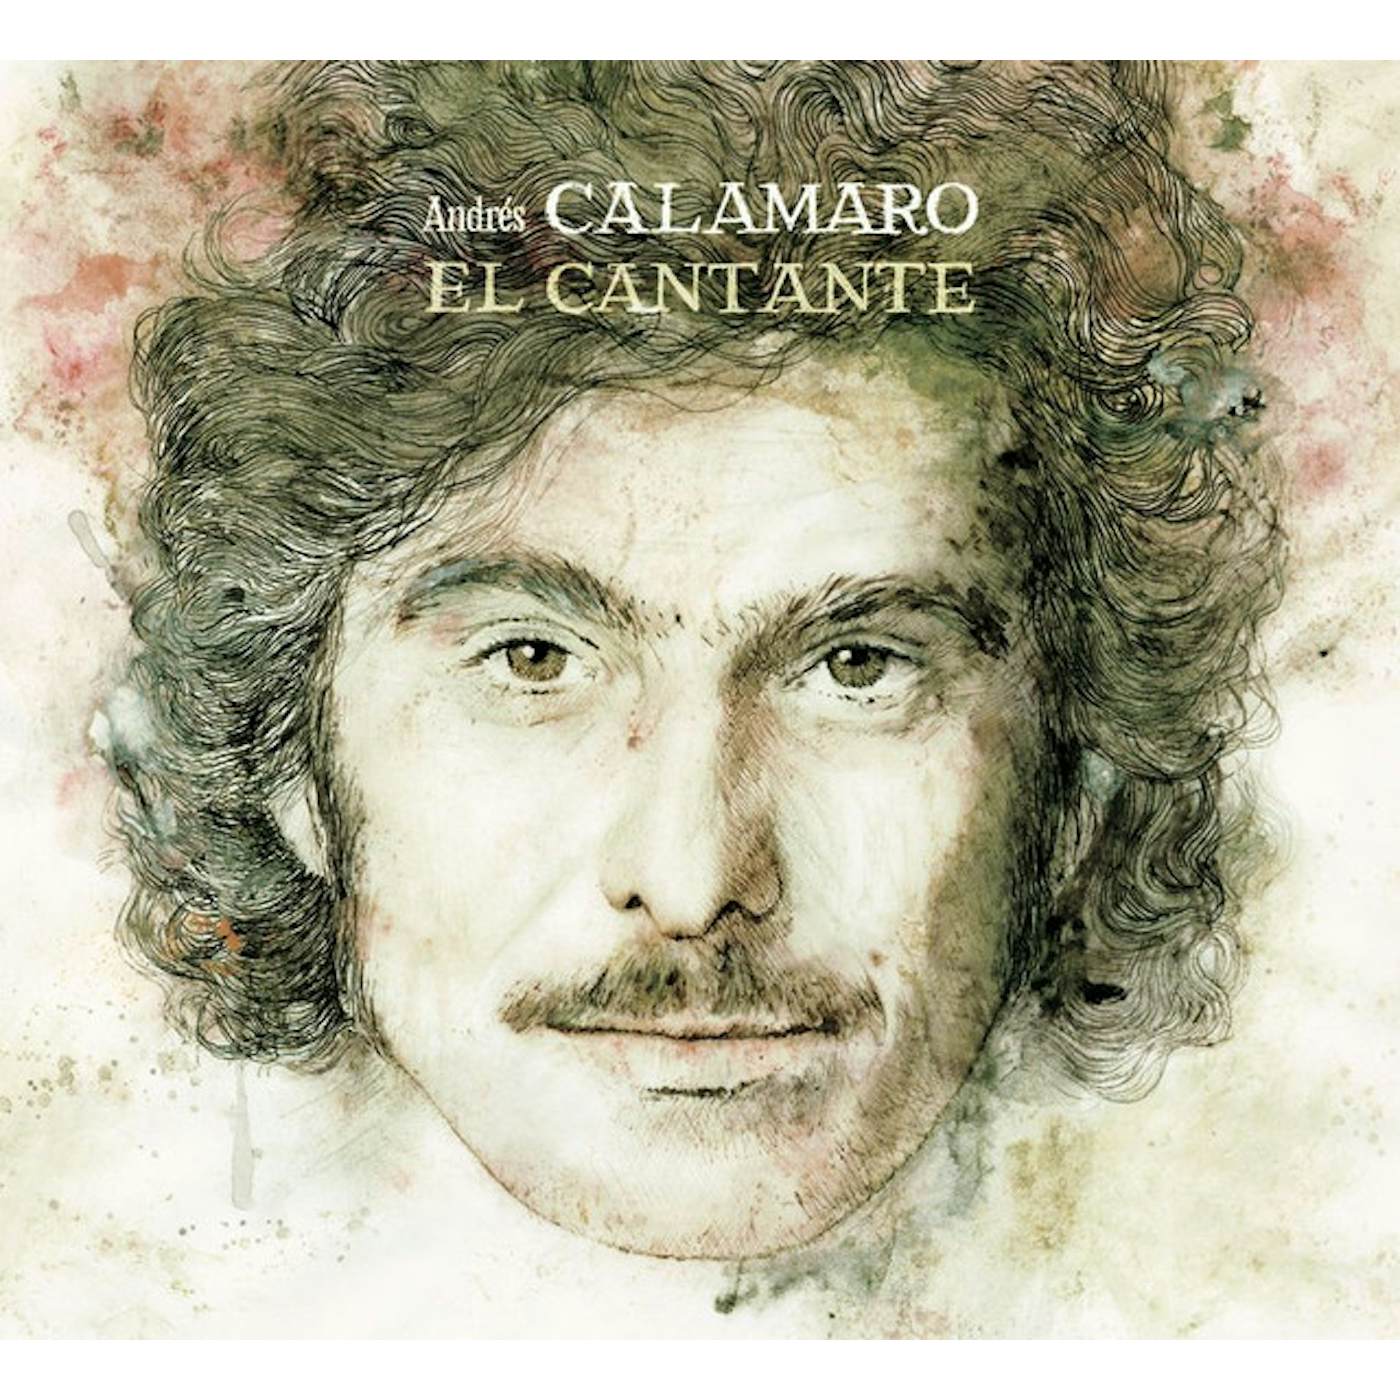 Andrés Calamaro El cantante Vinyl Record